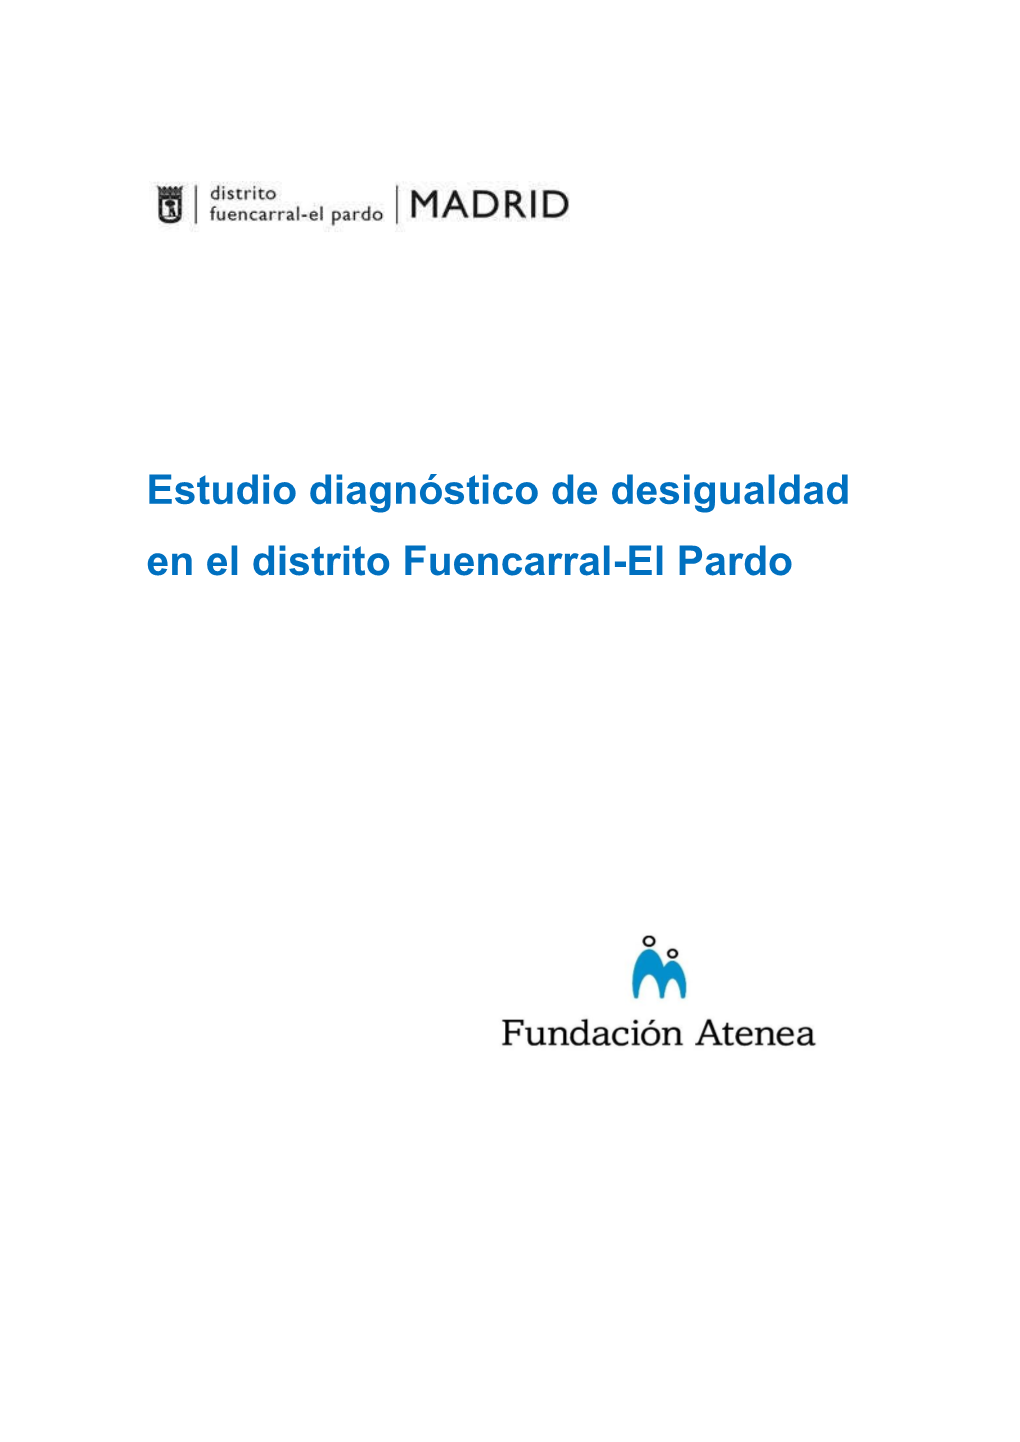 Estudio Diagnóstico De Desigualdad En El Distrito Fuencarral-El Pardo